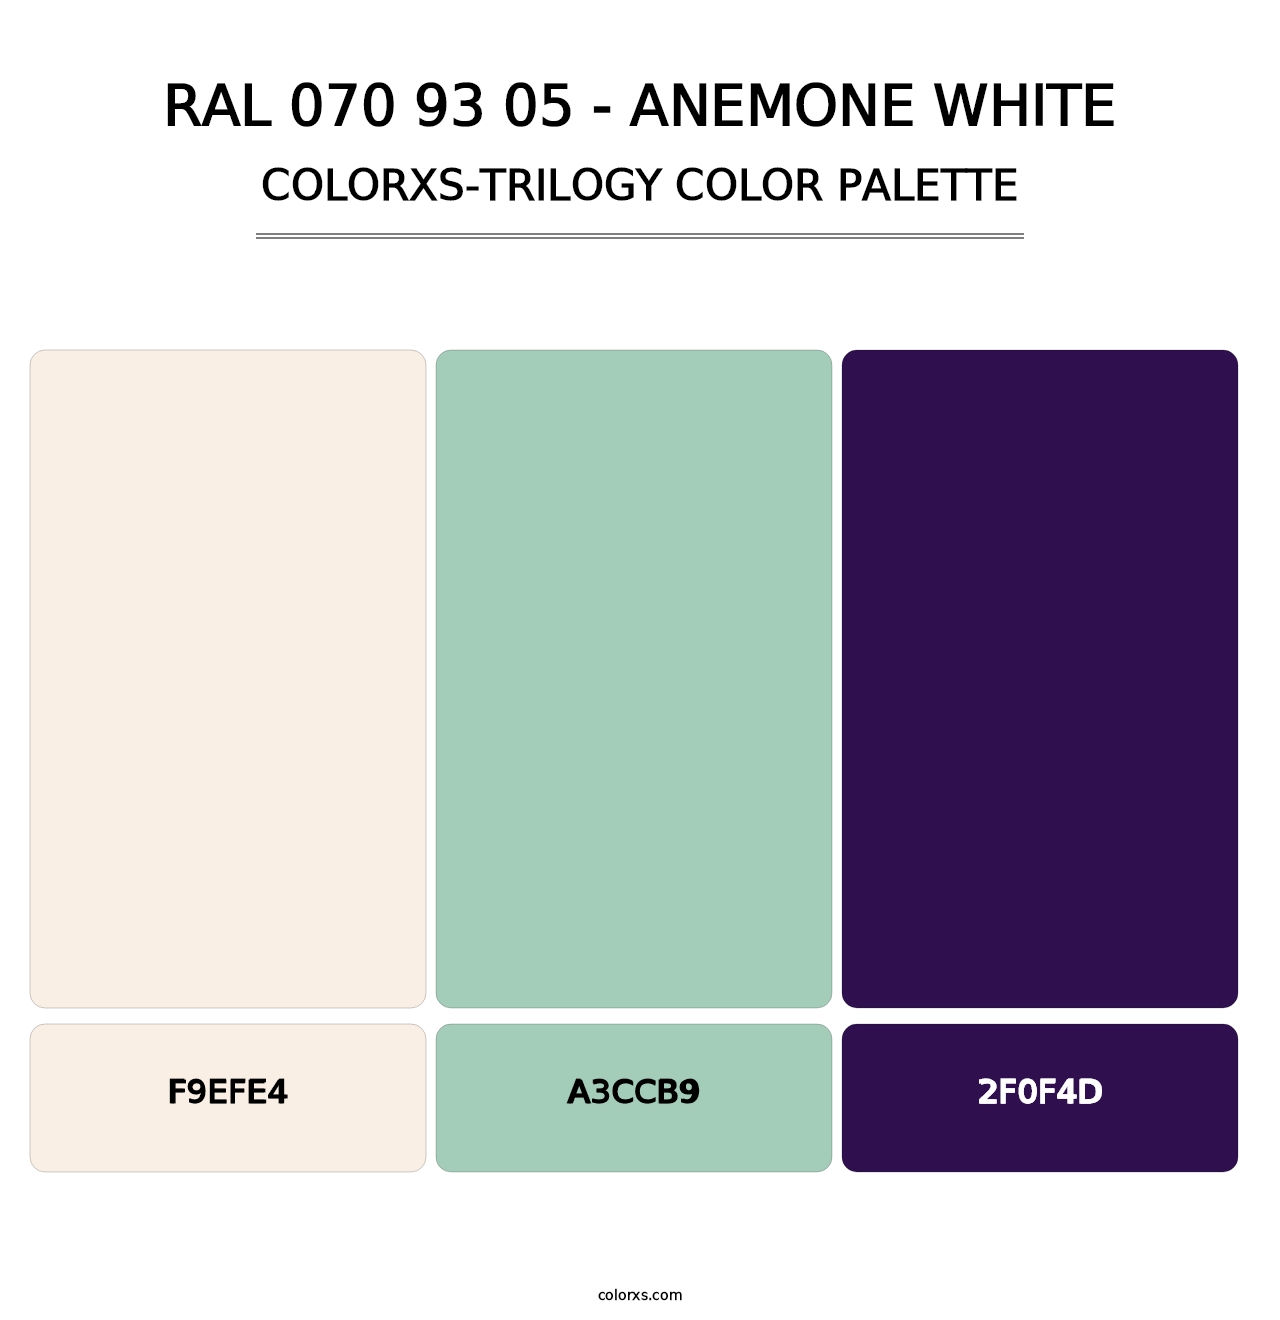 RAL 070 93 05 - Anemone White - Colorxs Trilogy Palette